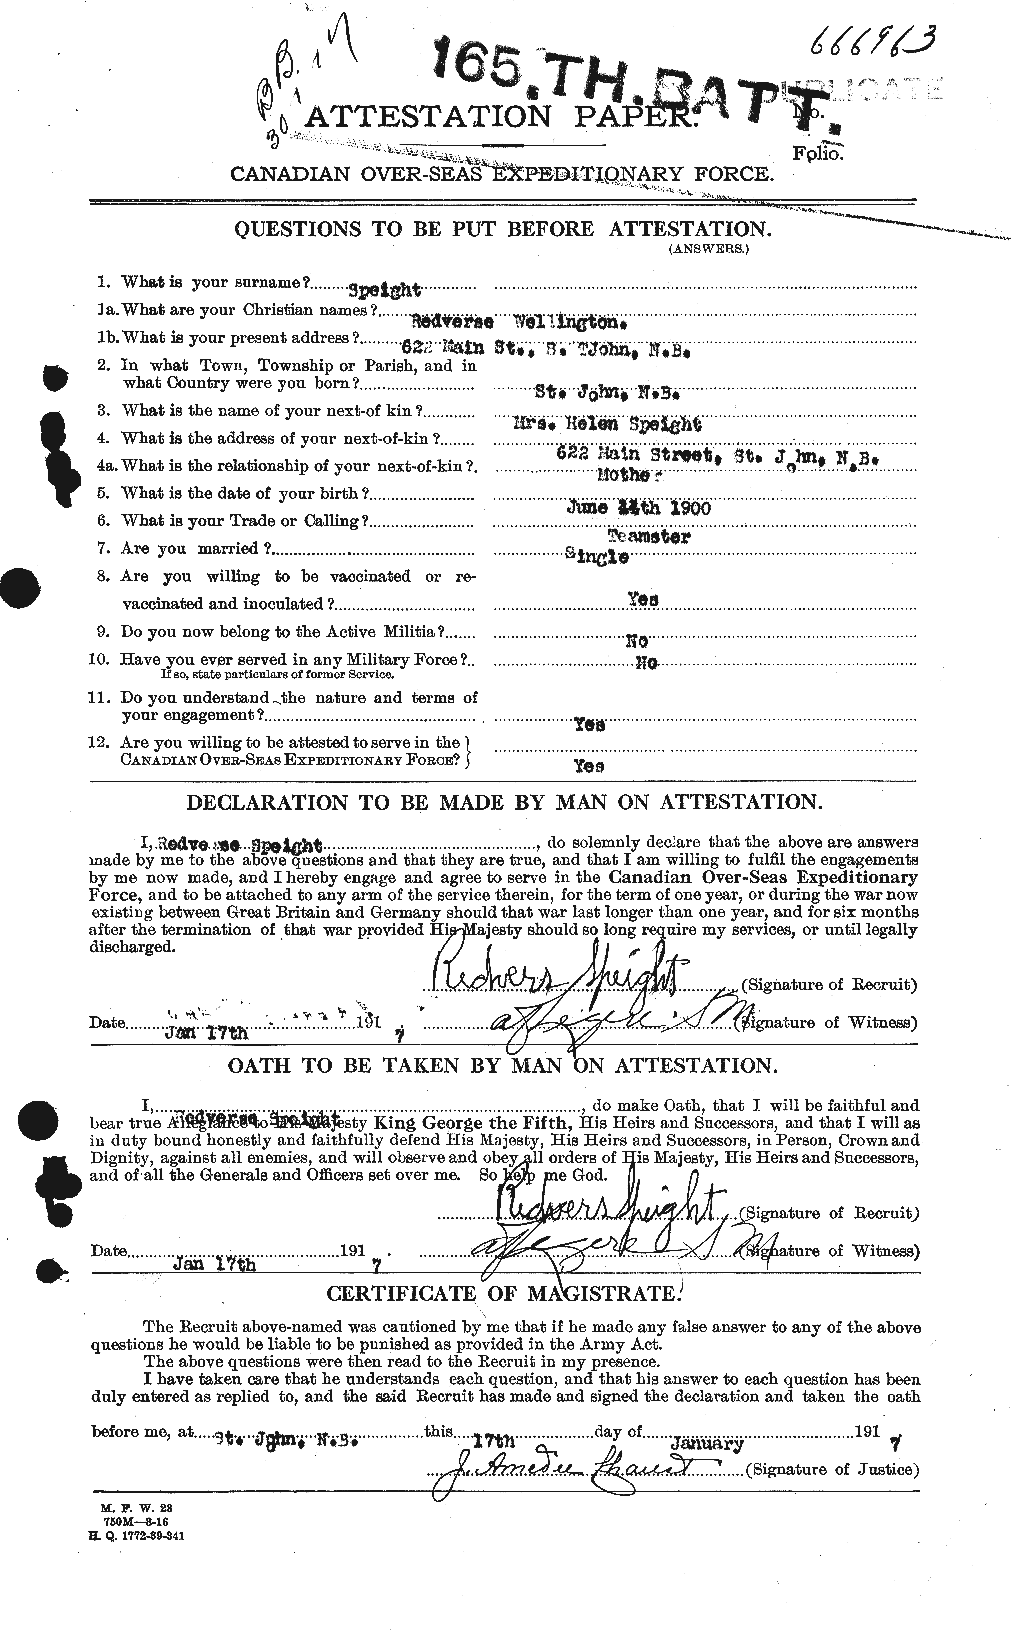 Dossiers du Personnel de la Première Guerre mondiale - CEC 110064a